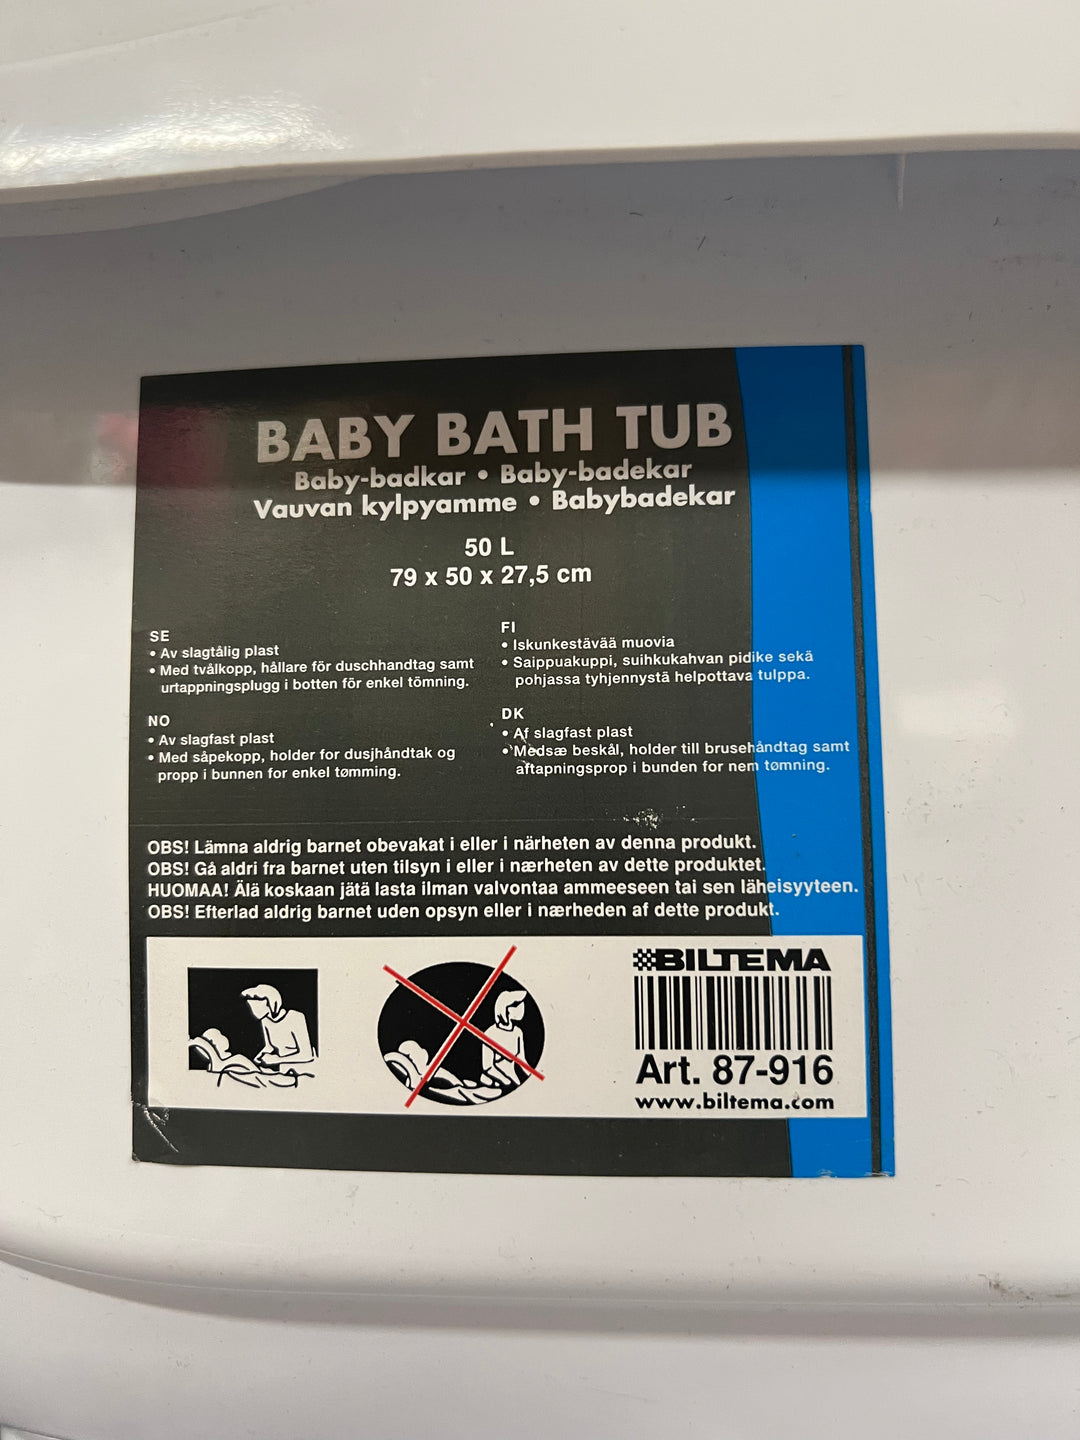 Baby bath TUB